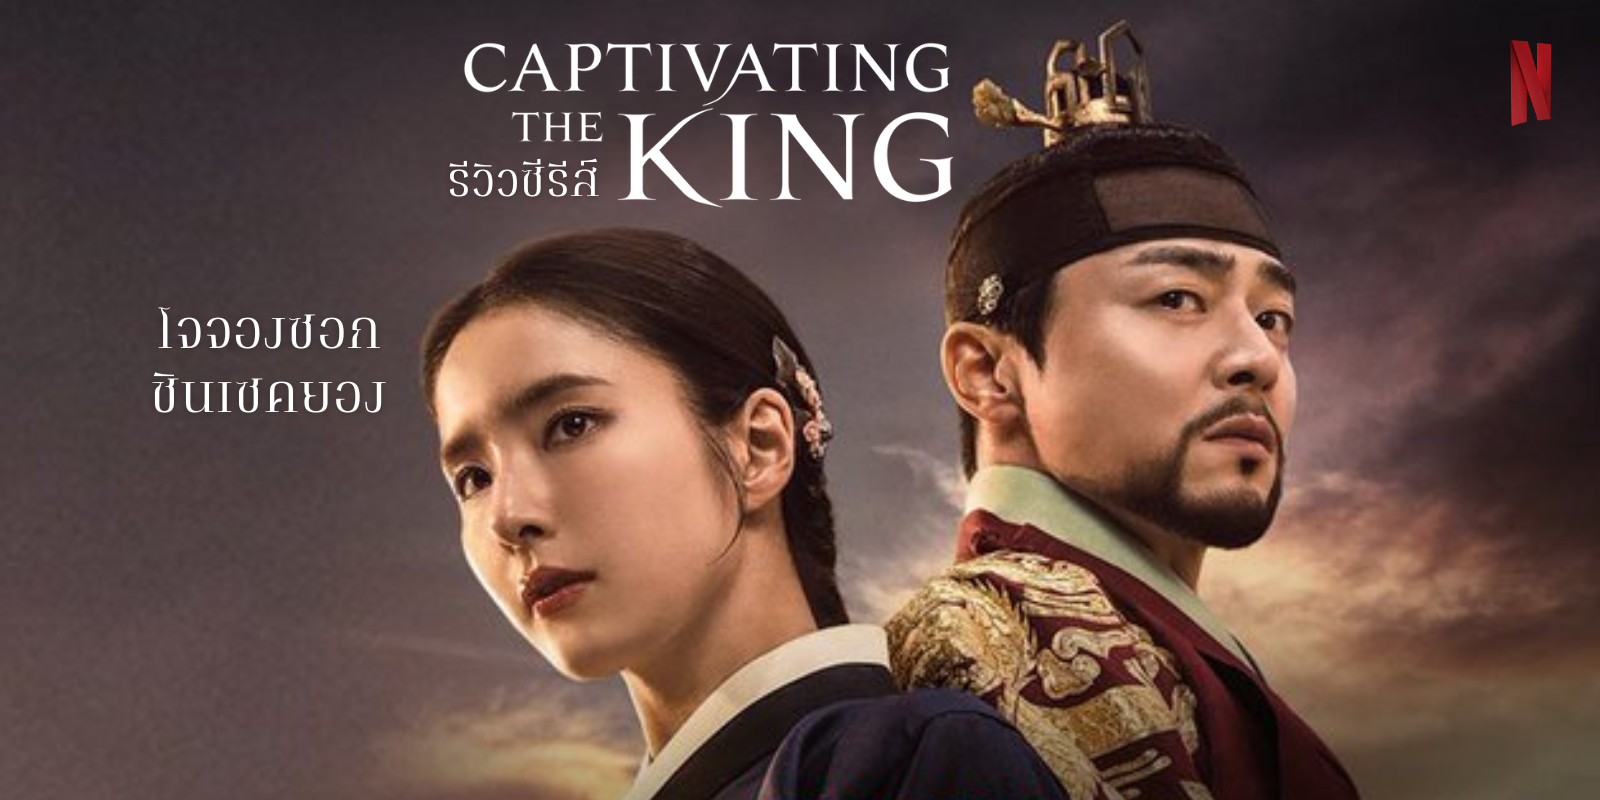 รีวิว Captivating the King เสน่ห์ร้ายบัลลังก์ลวง ซีรีส์ย้อนยุคแนวดราม่าวังหลวง ผลงาน โจจองซอก & ชินเซคยอง ทาง Netflix